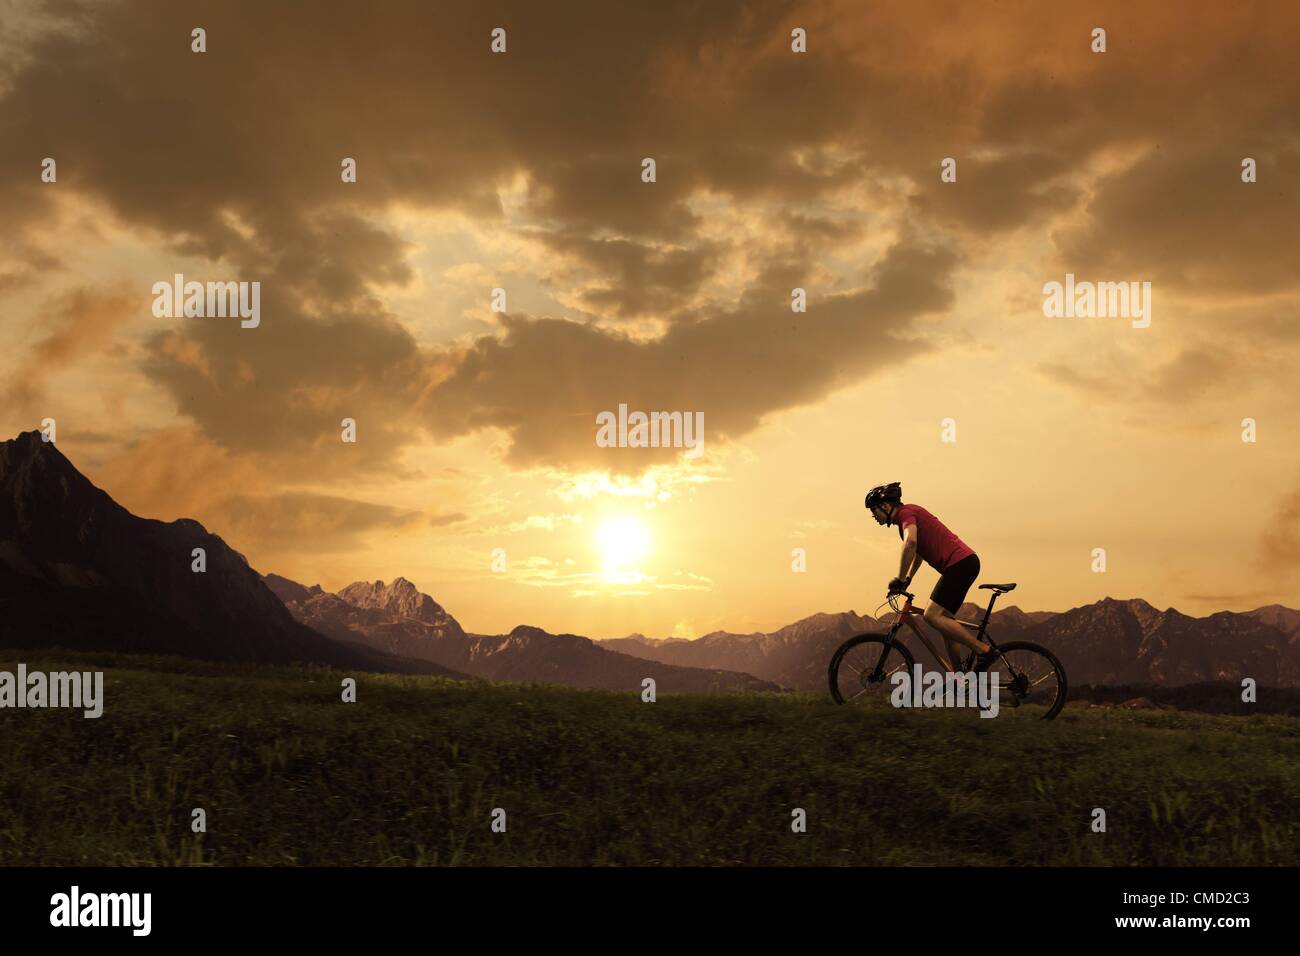 08.11.2011. Germania. Modello rilasciato la foto di un ciclista in sella nell'ambiente SUN. Foto Stock